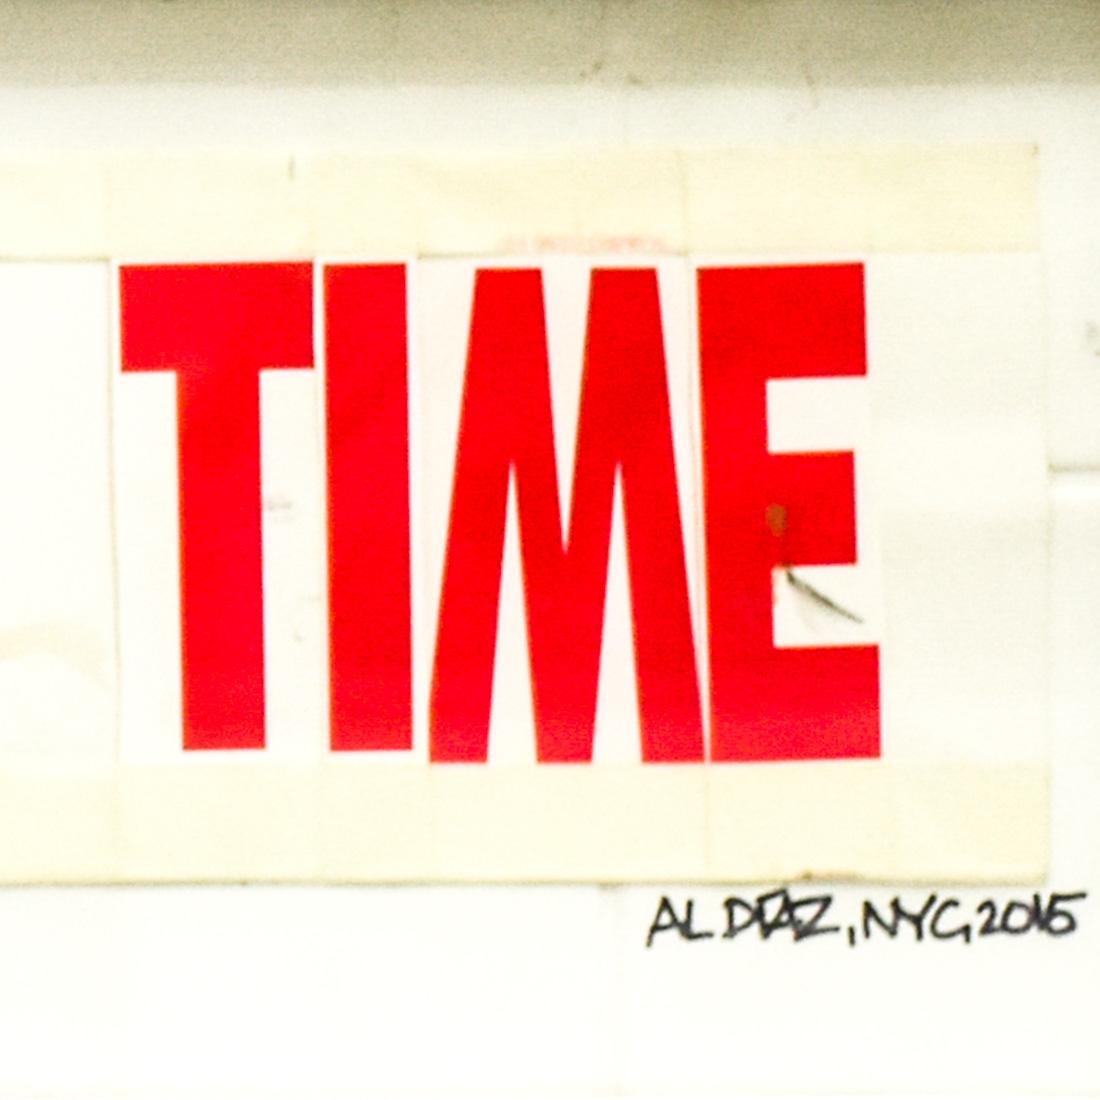 Superbe œuvre d'art originale double face d'Al Diaz.
Al Michele est également célèbre pour avoir été l'autre moitié du duo SAMO© des années 70-80 avec Jean Michel Basquiat.
L'une des faces comporte un texte provocateur de Diaz - WE AWAIT A NEW TIME